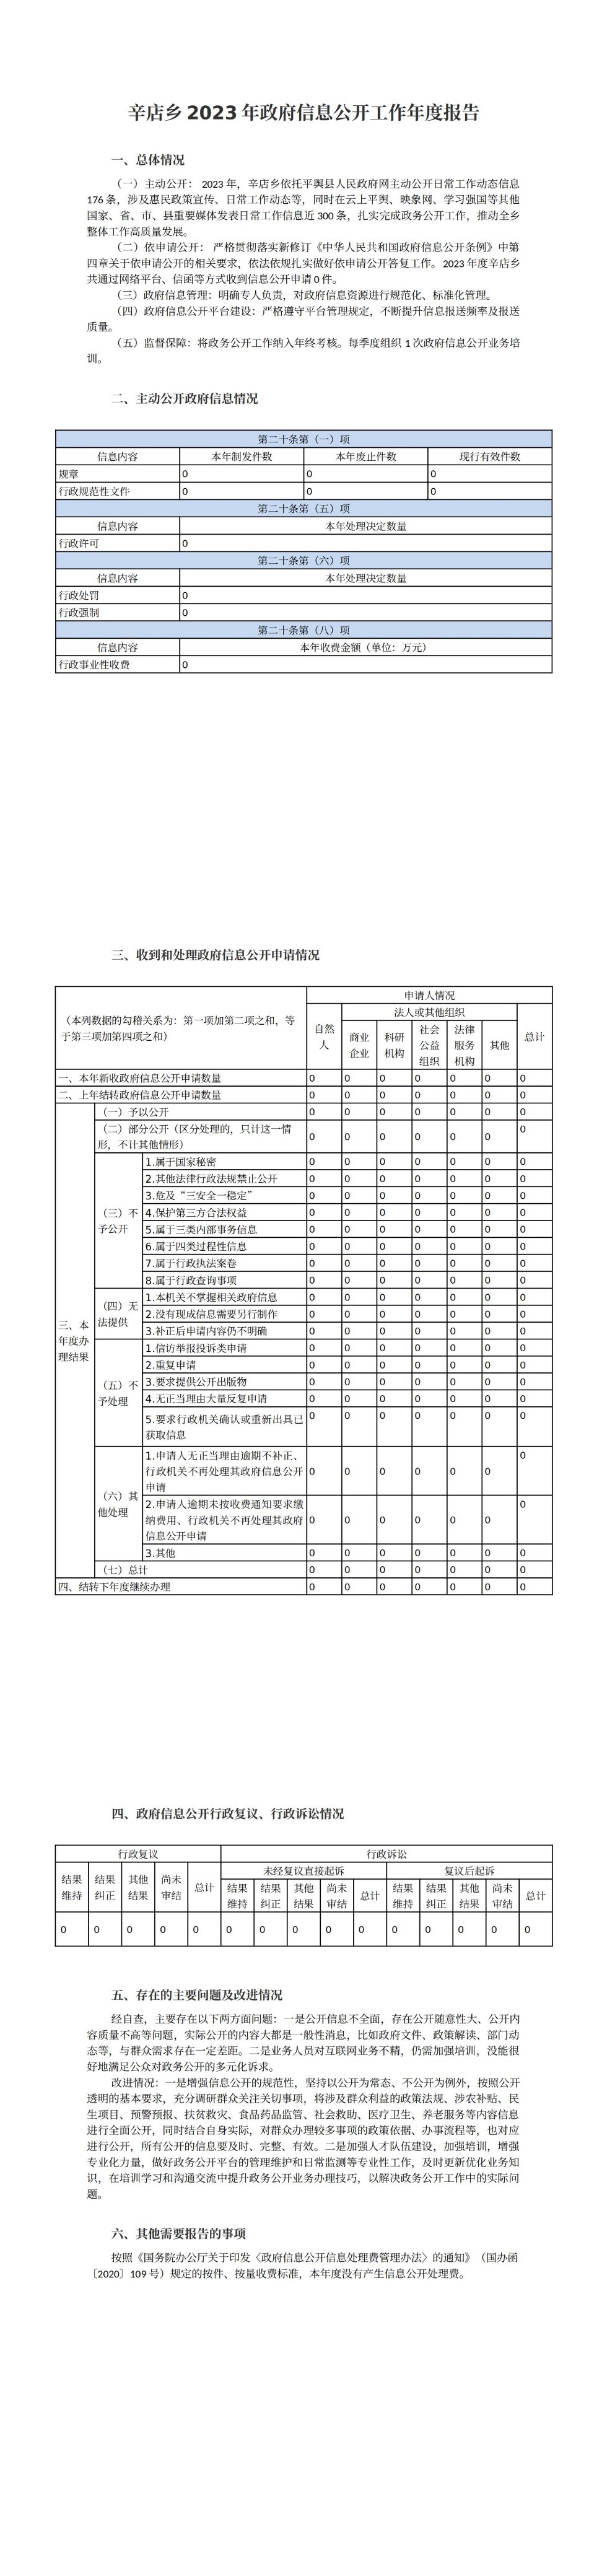 辛店乡2023年政府信息公开工作年度报告 (1)_00.jpg